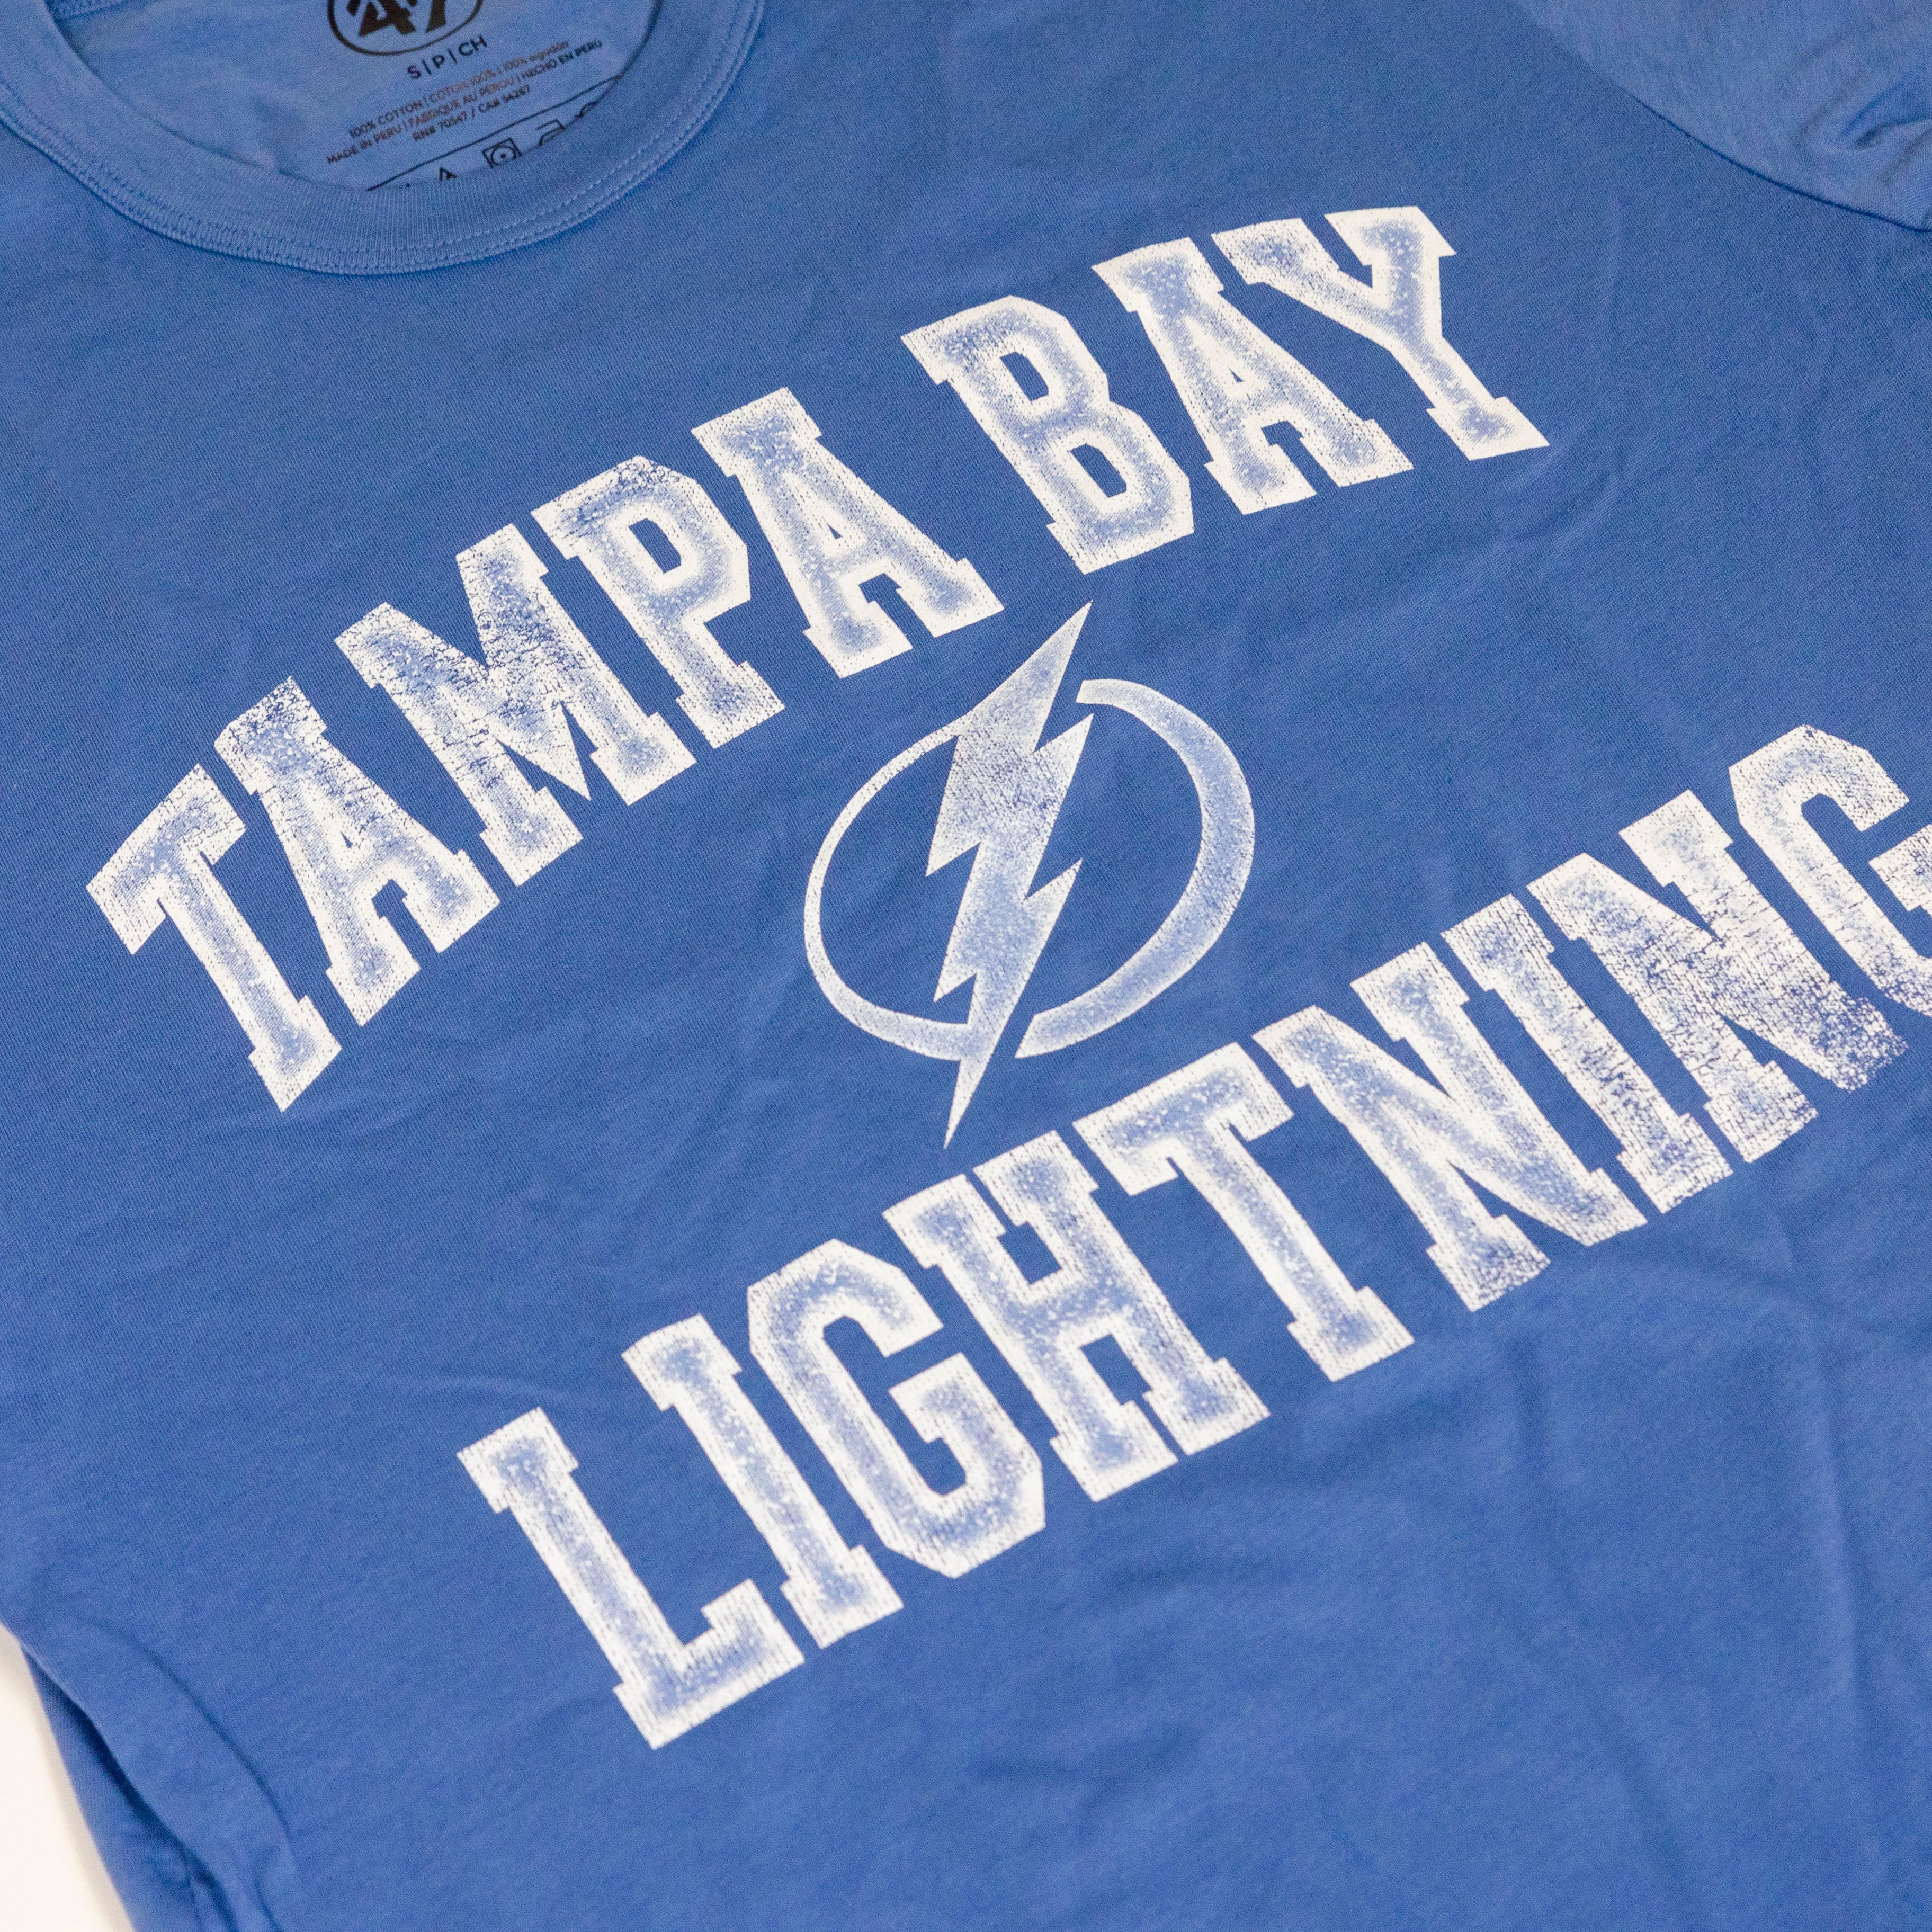 shop tampa bay lightning